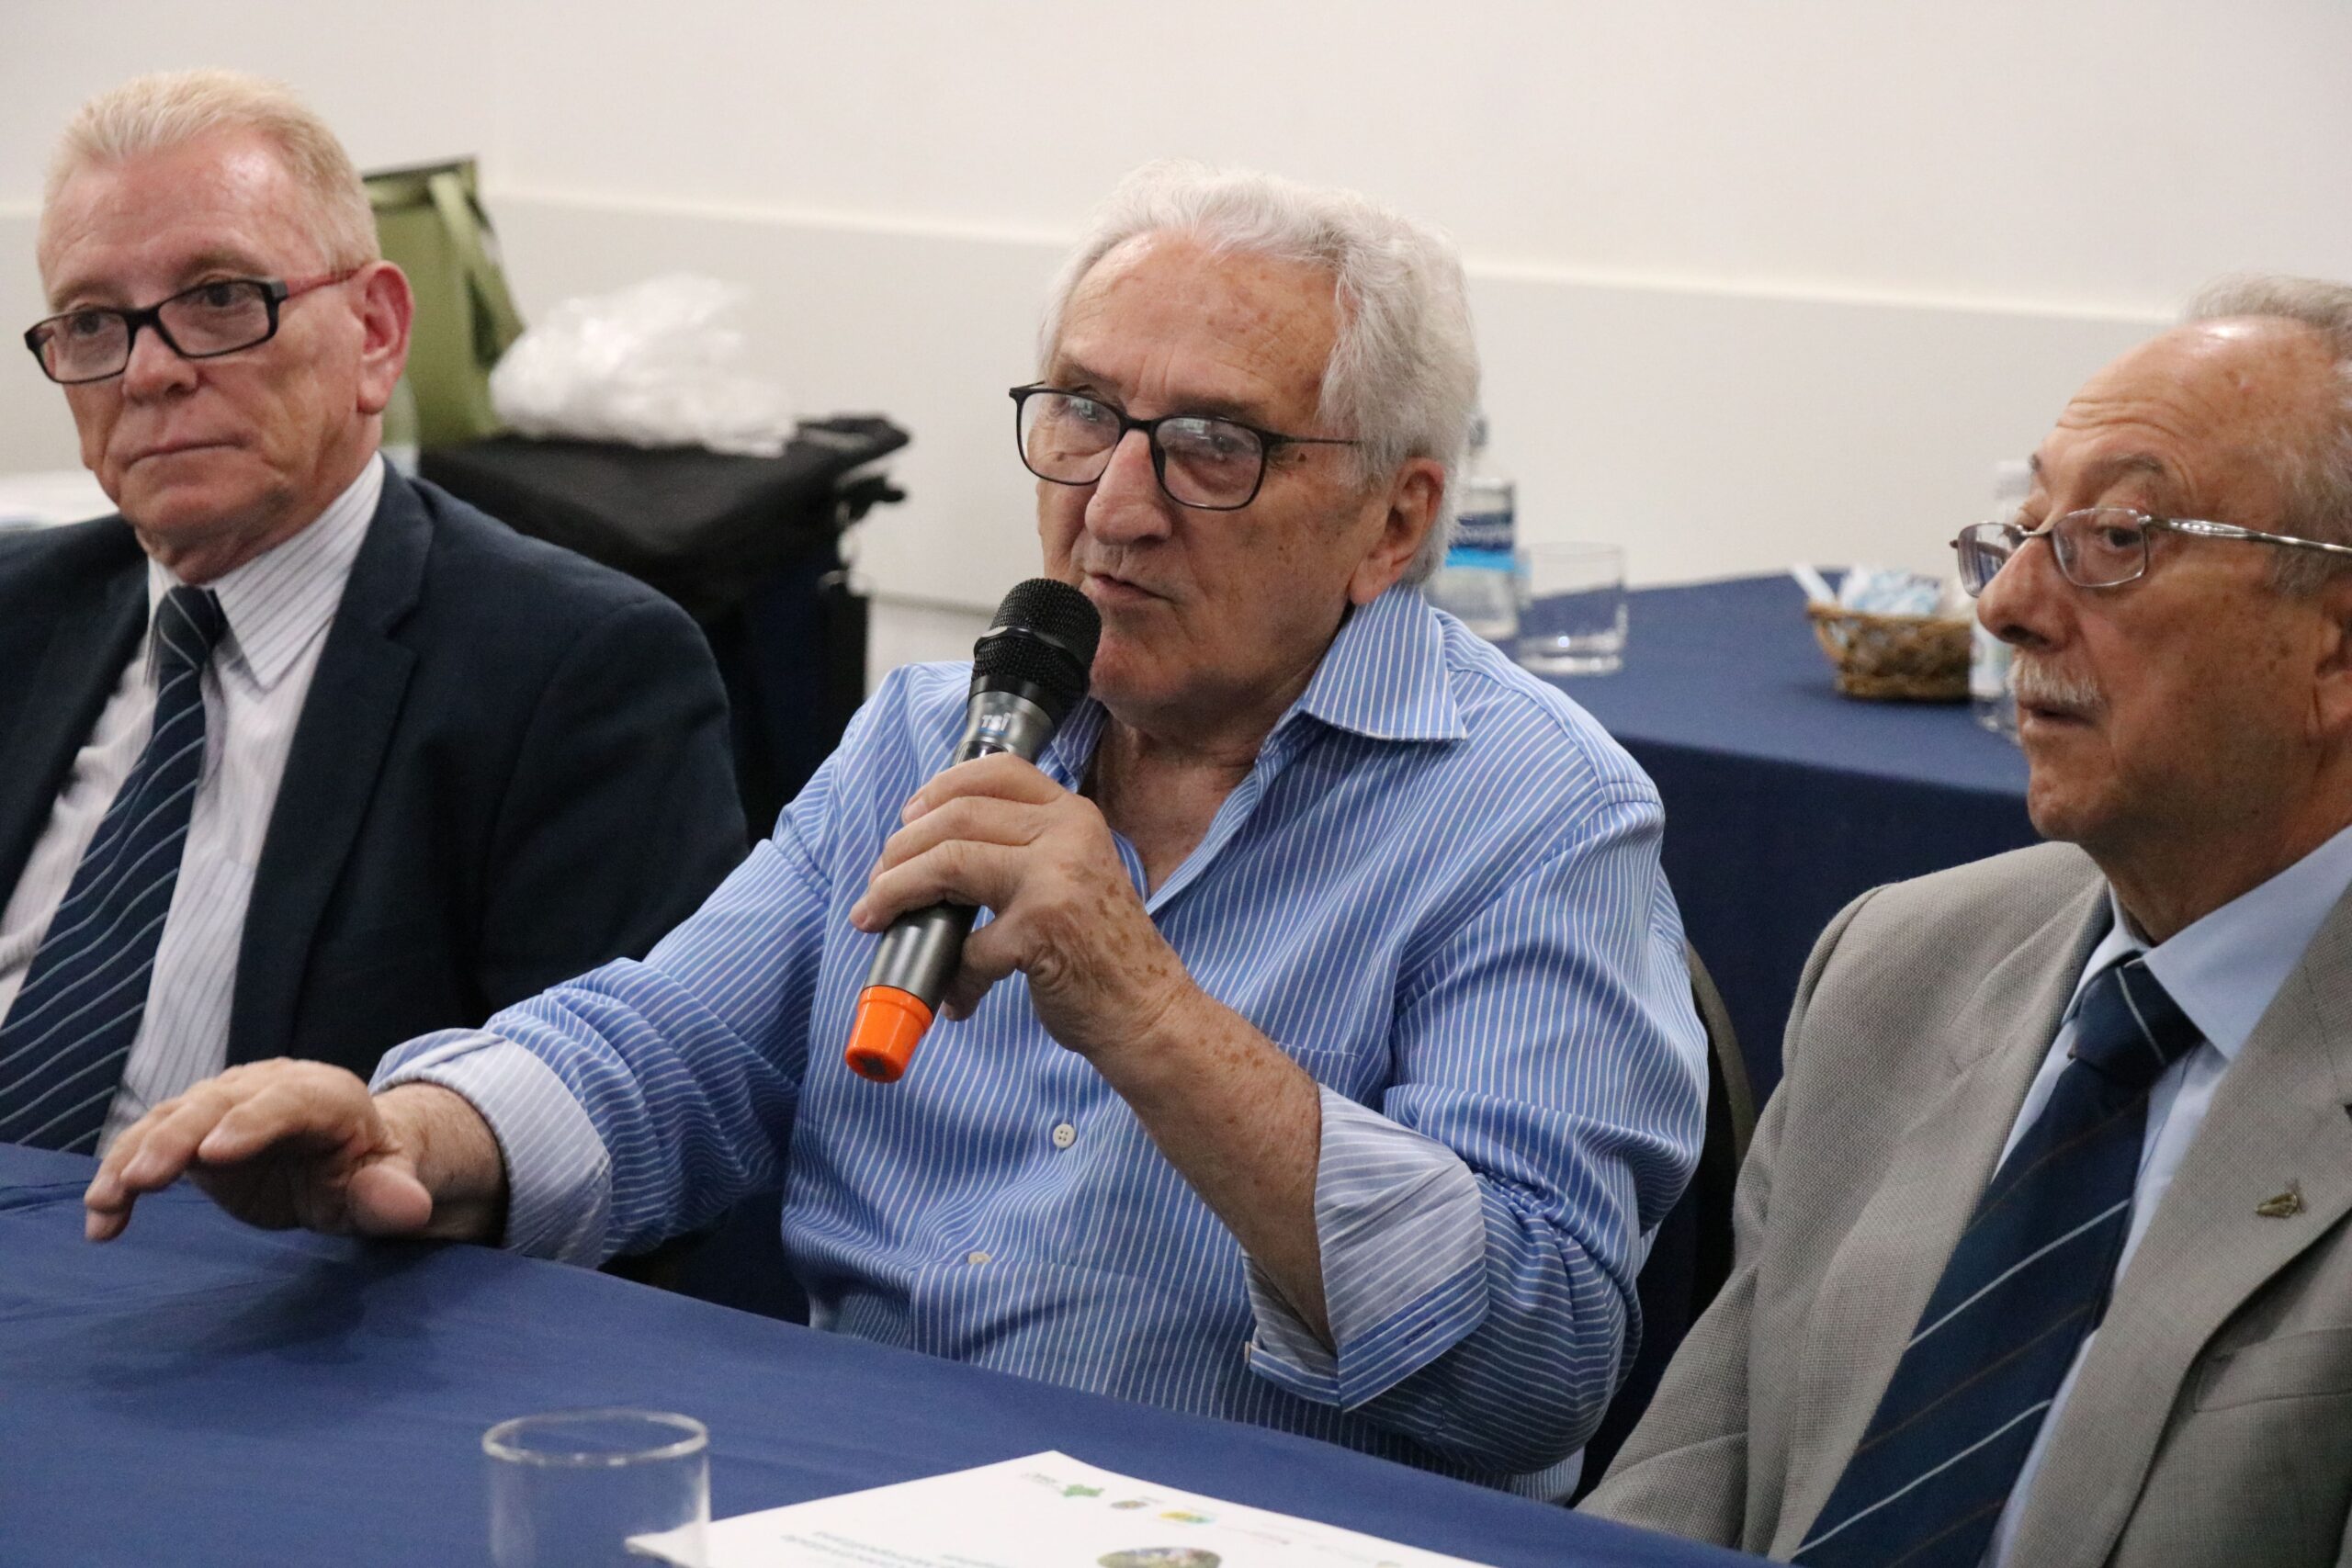 Na foto aparecem três homens sentados atrás de uma mesa com toalha azul. Ao centro, o presidente do CFMV, que fala ao microfone, a esquerda da foto, o presidente do CRMV-SP, e a direita, o representante regional de Campinas.